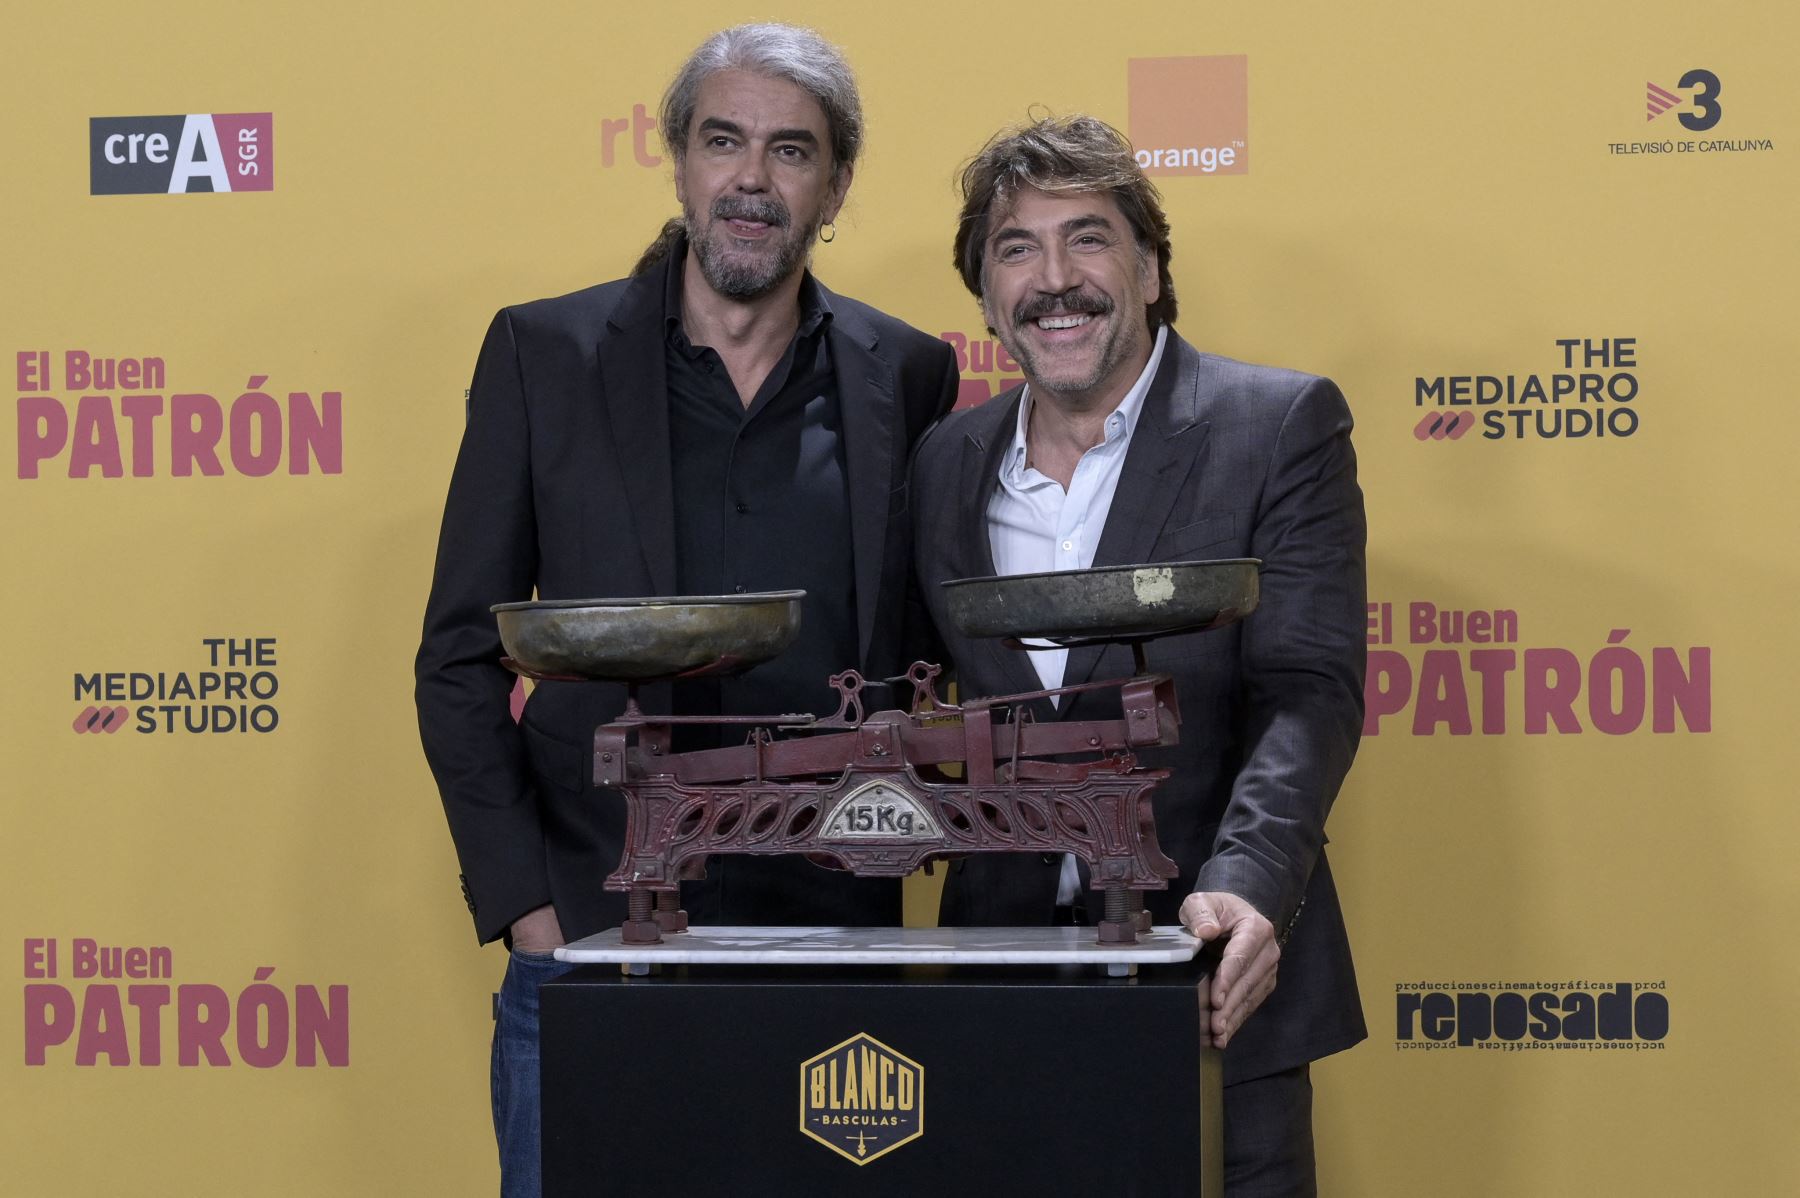 Fernando León de Aranoa y Javier Bardem, director y protagonista de "El Buen Patrón", en foto de archivo. Foto: AFP